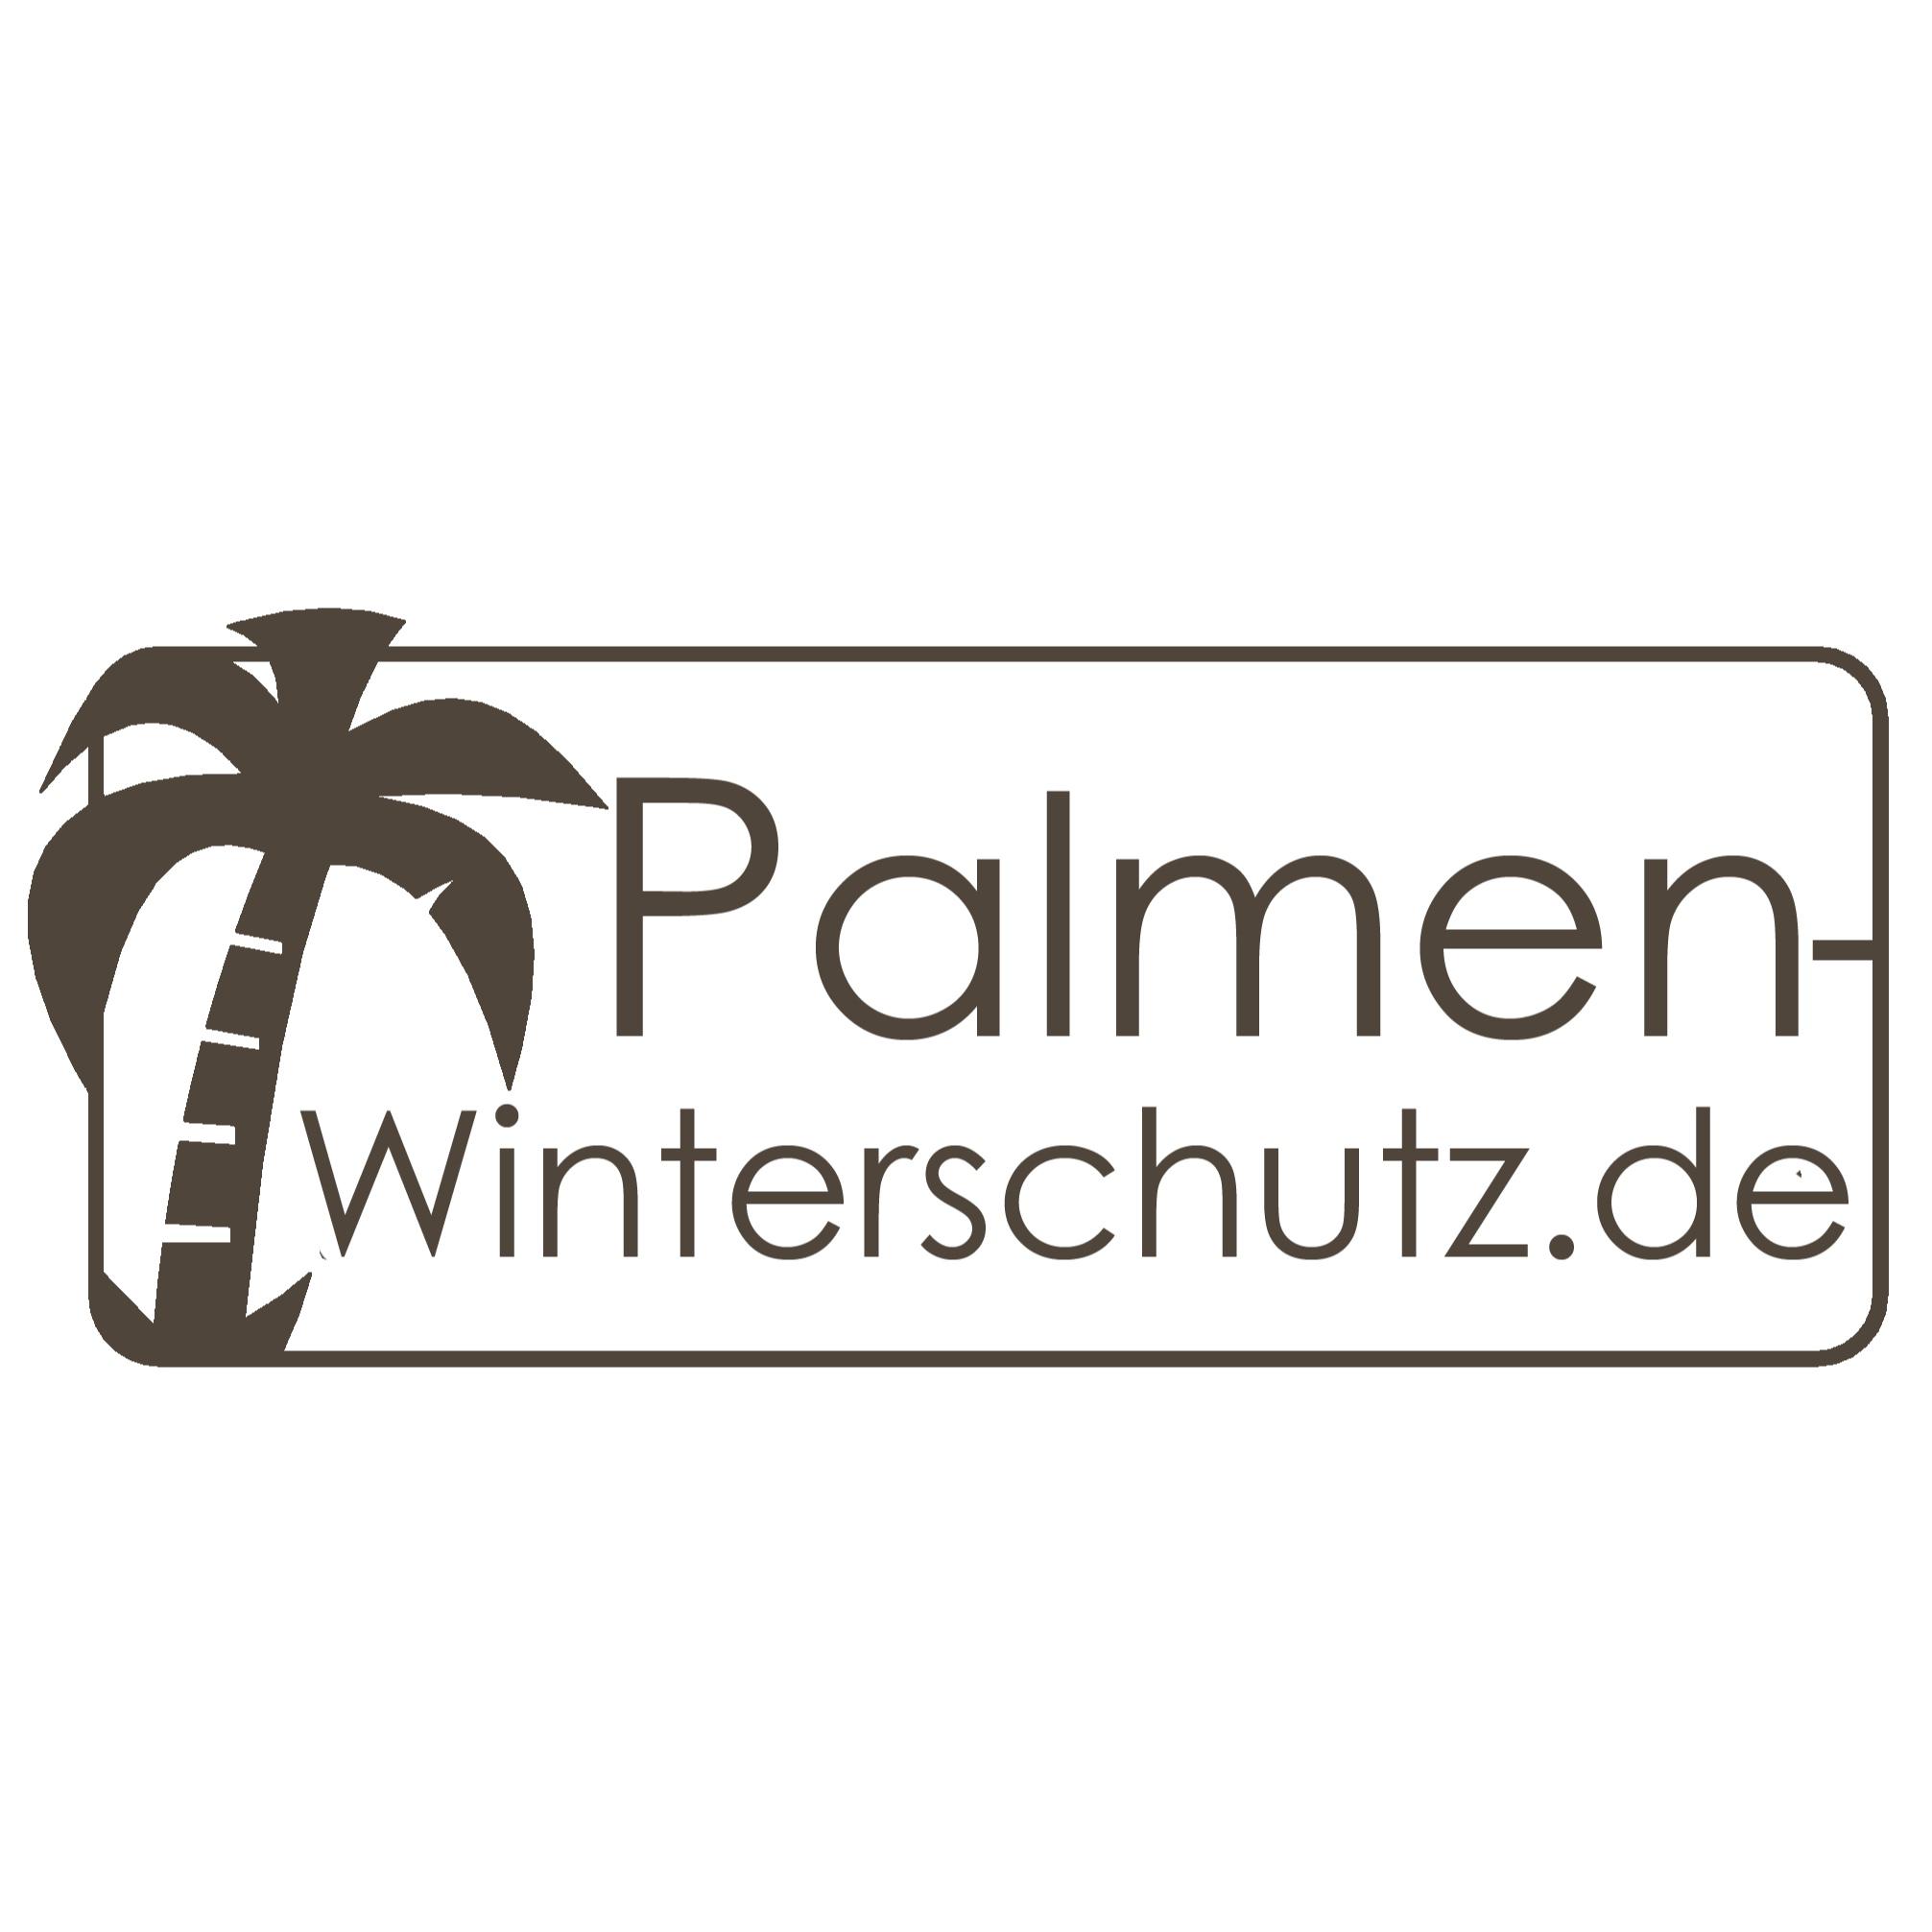 Winterschutz für Palmen und Mediterrane Inh. Rene Ehrlich Logo